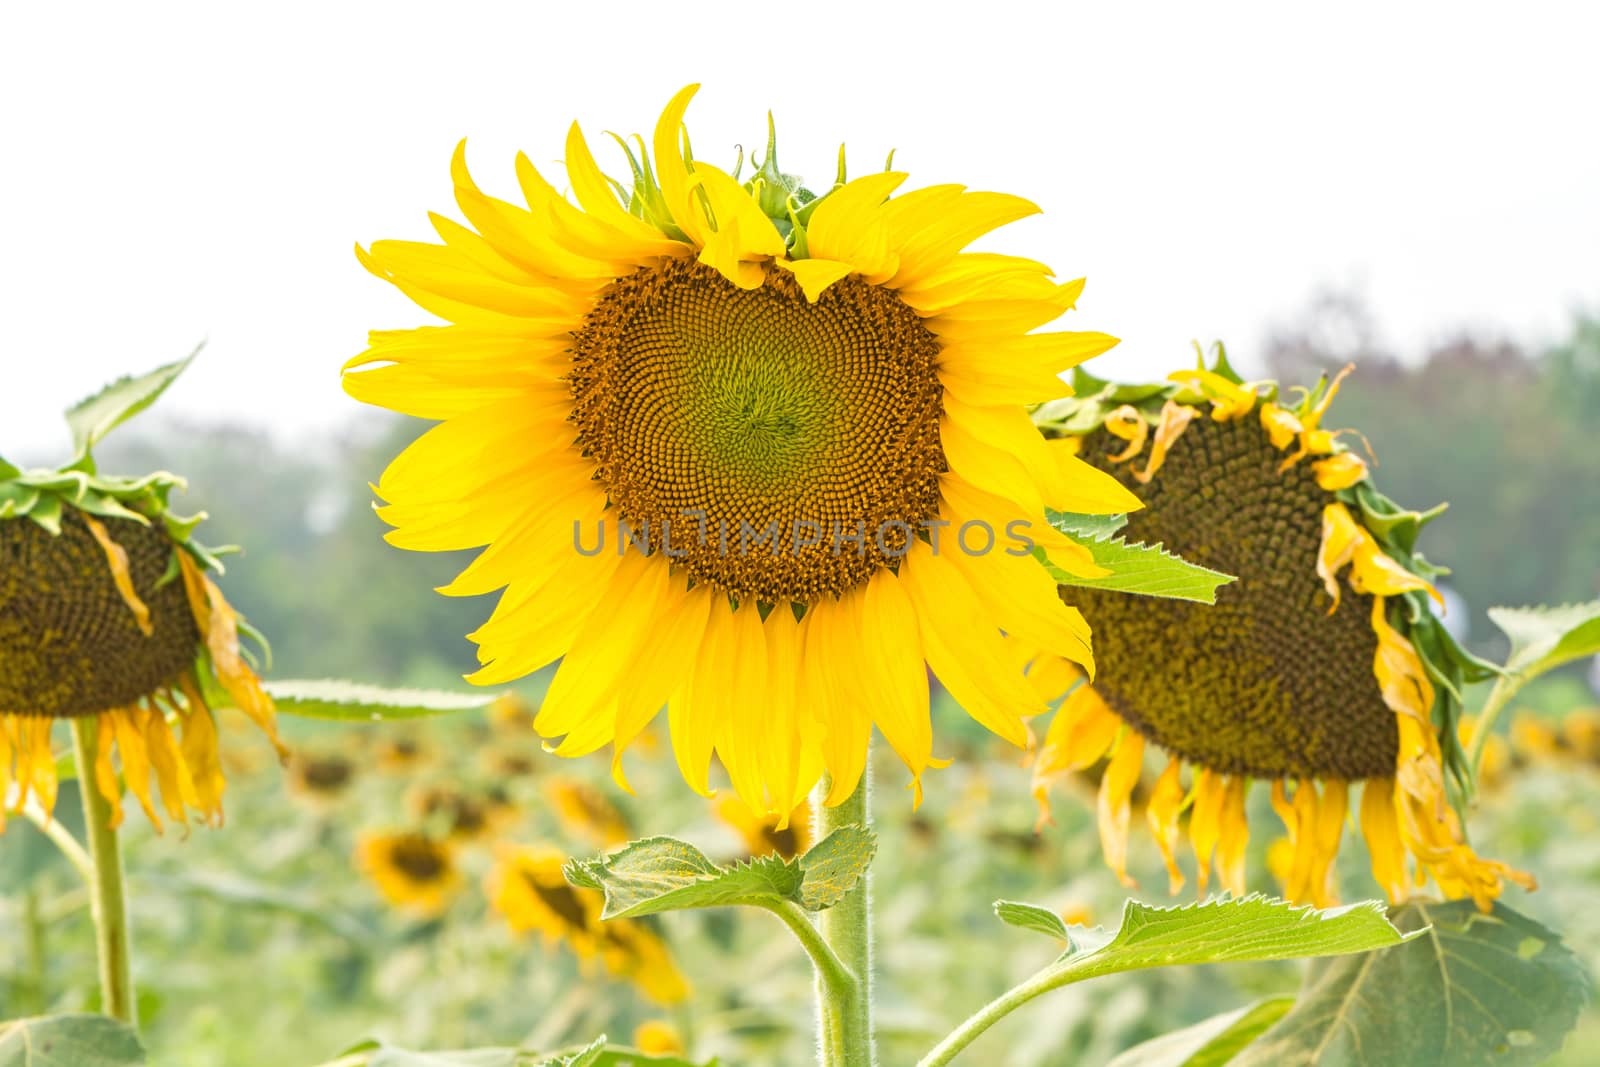 Beautiful yellow flower, sunflower in field plantation